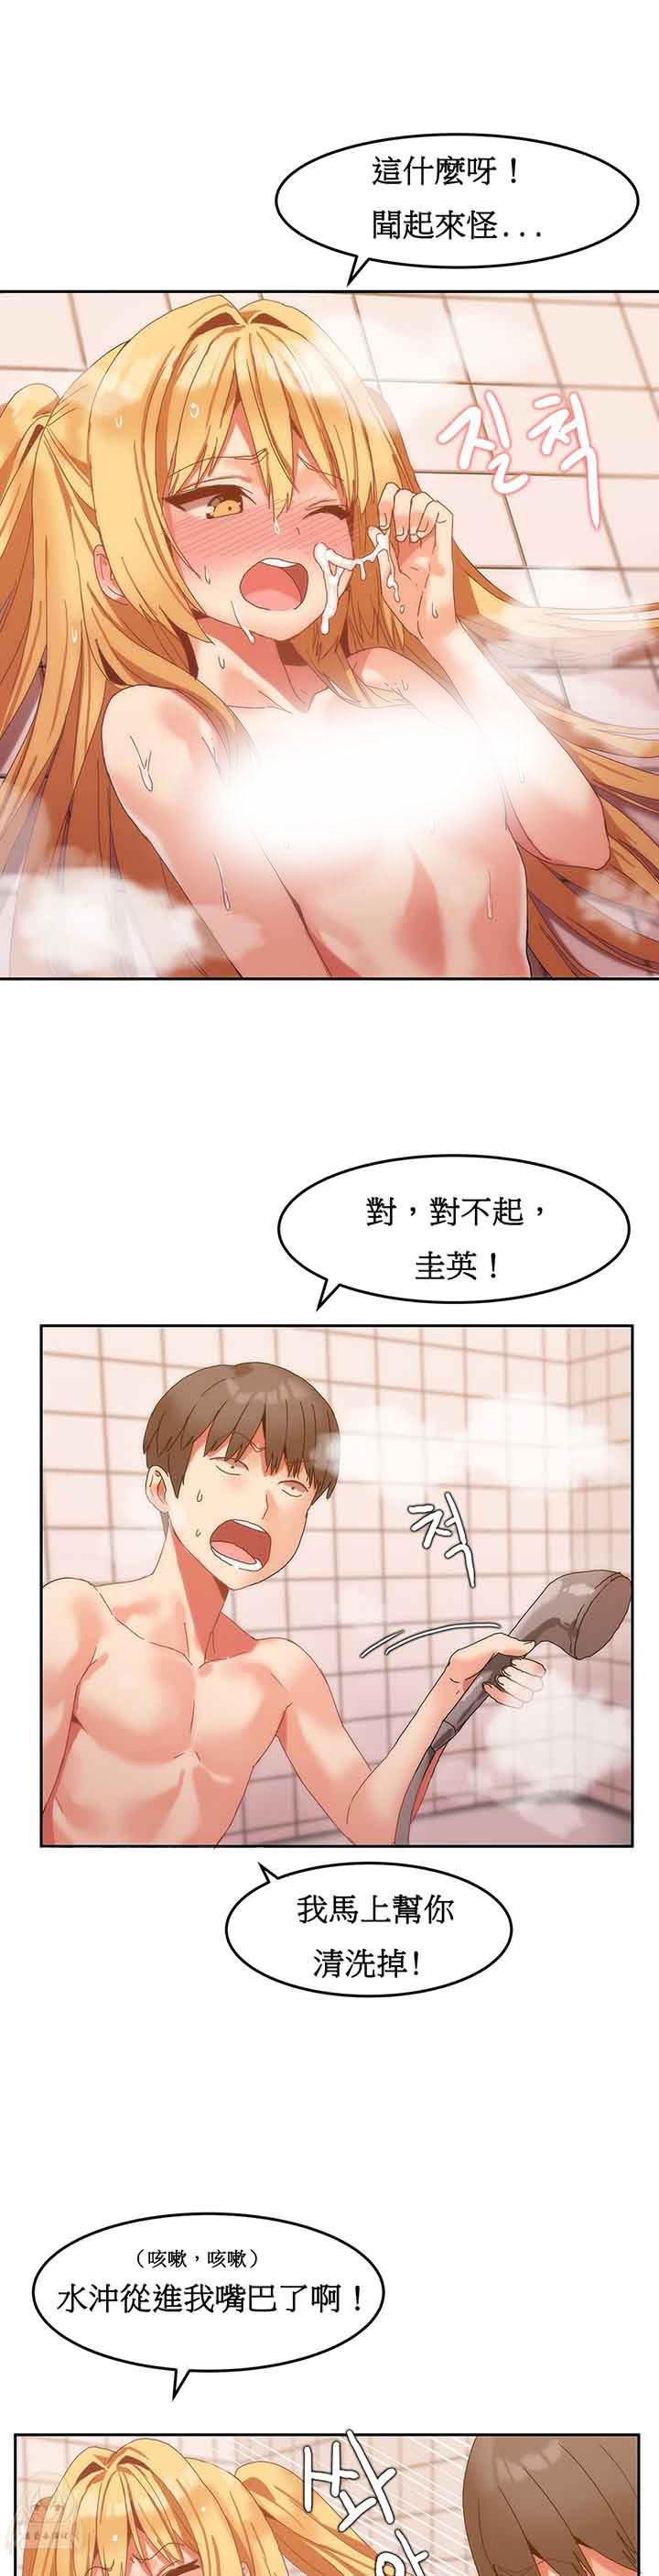 韩国污漫画 寄宿公寓-陰氣之洞 第9话 4